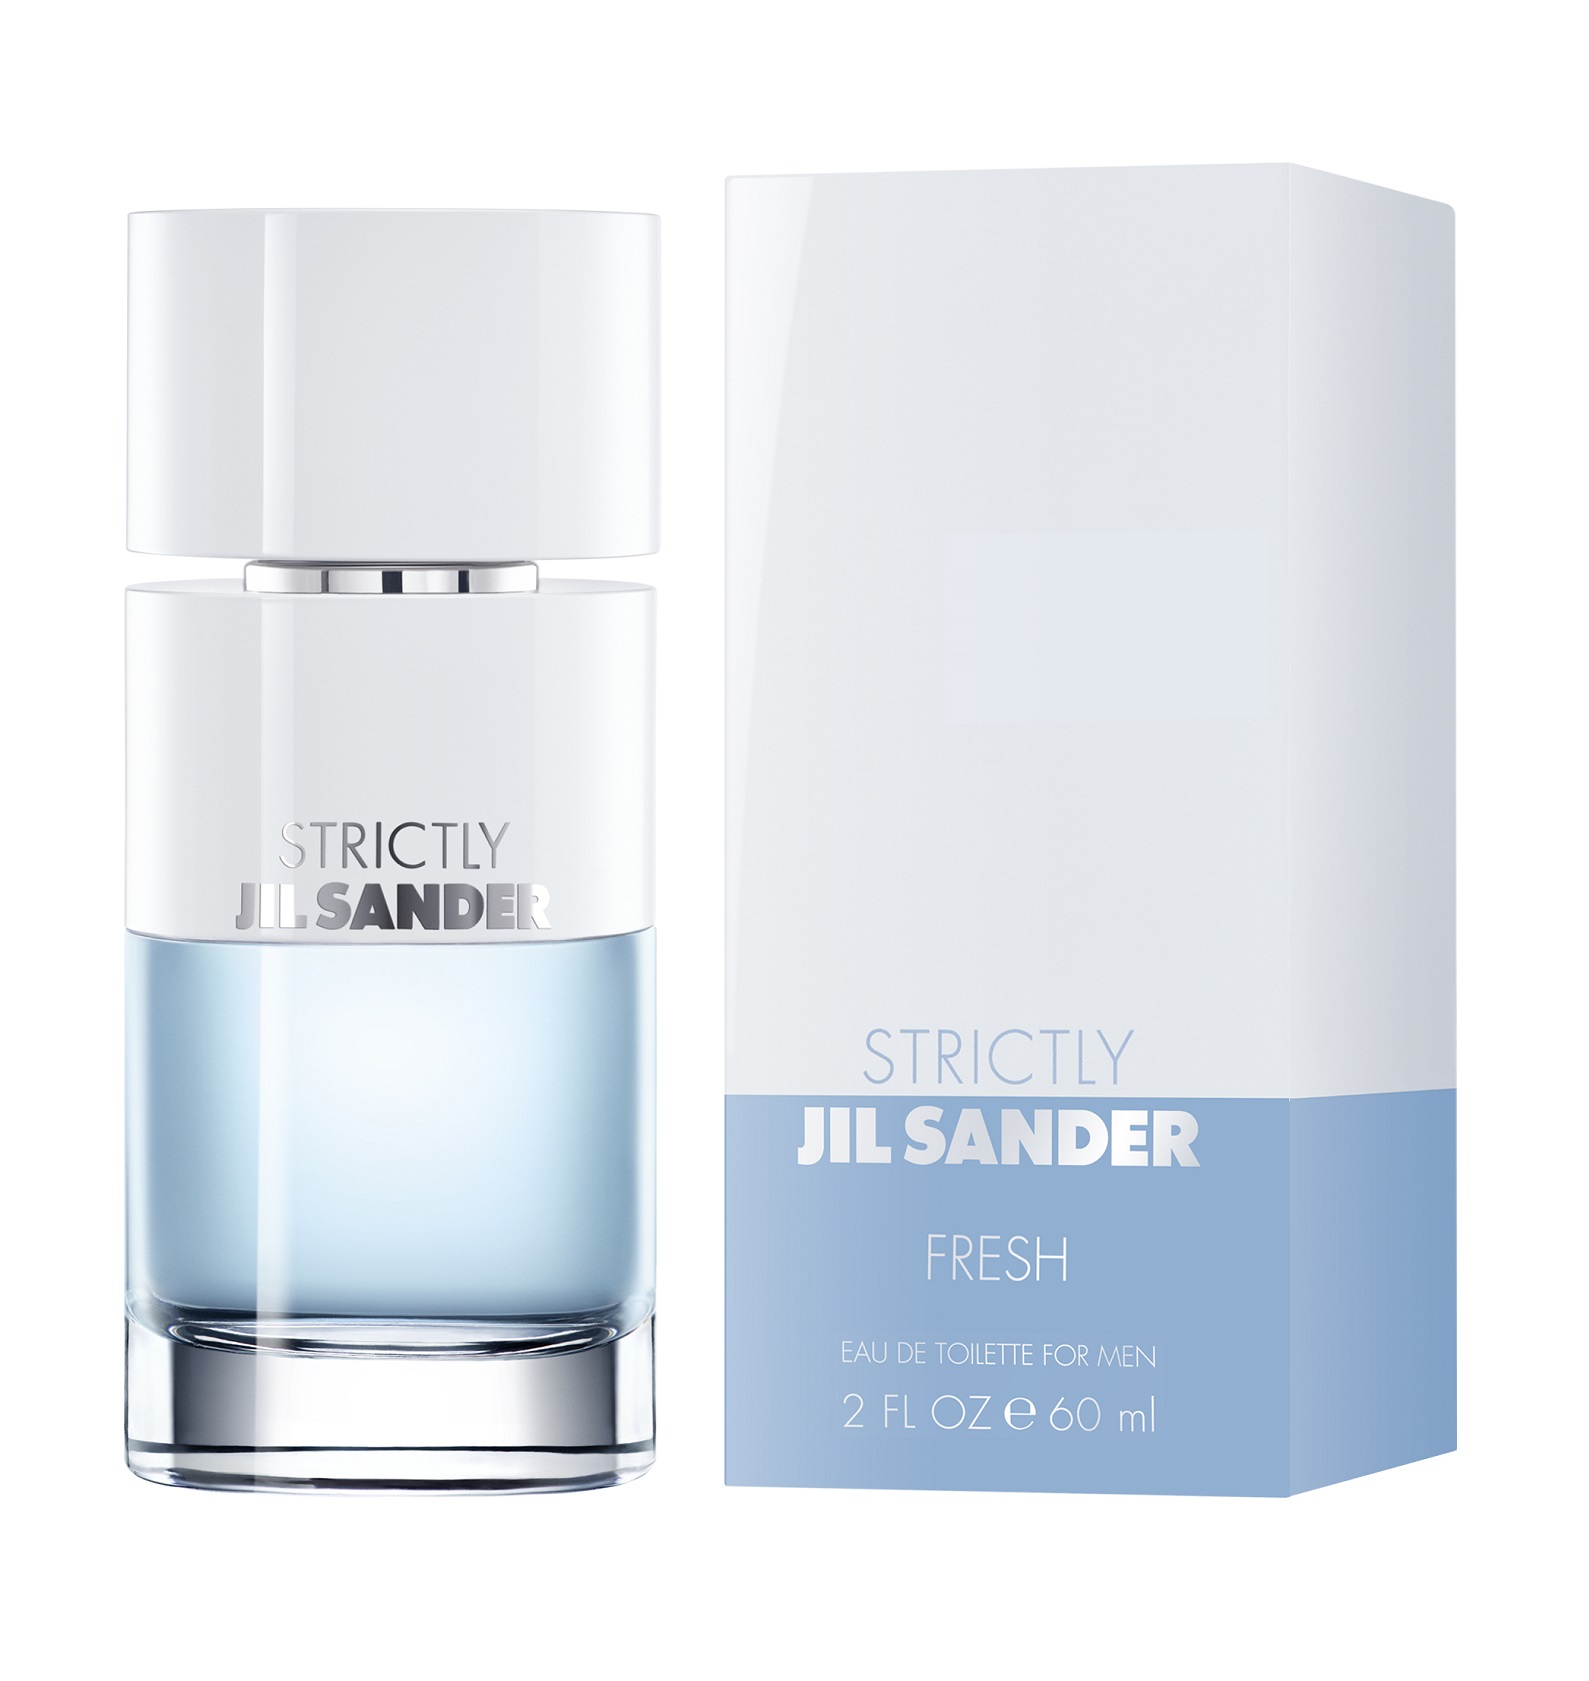 Strictly Jil Sander Fresh Jil Sander cologne - a new fragrance for men 2018